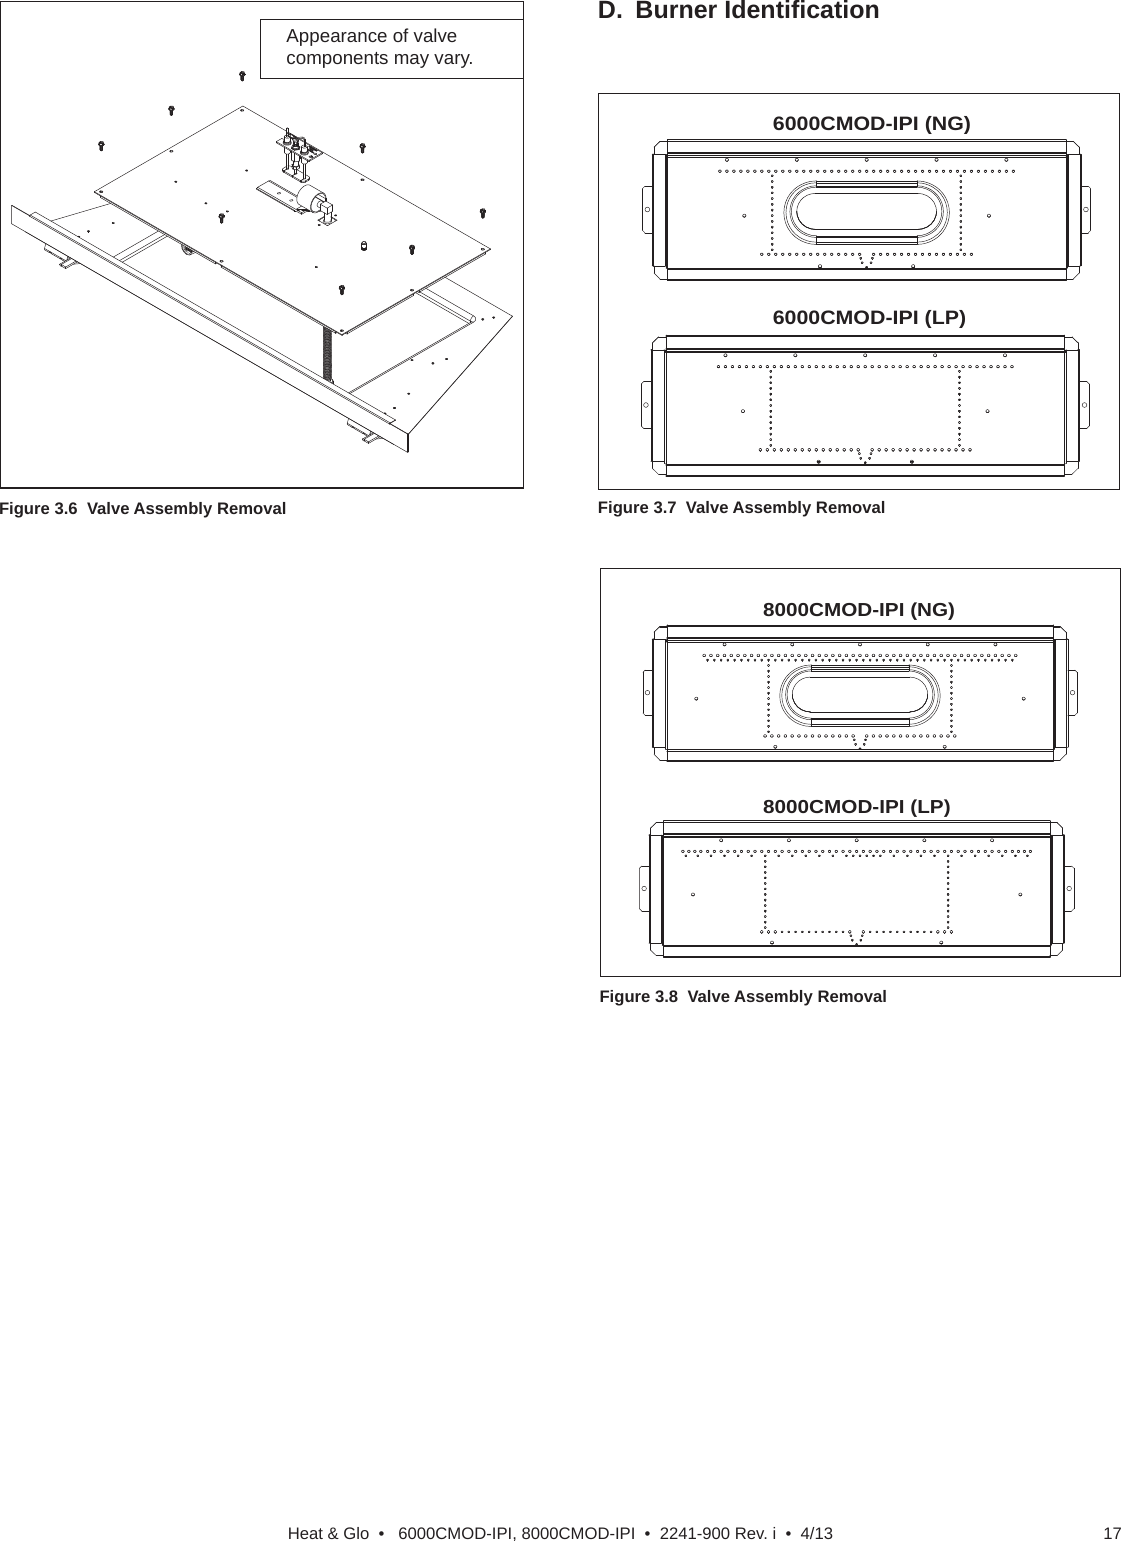 17Heat &amp; Glo  •   6000CMOD-IPI, 8000CMOD-IPI  •  2241-900 Rev. i  •  4/13Figure 3.6  Valve Assembly RemovalAppearance of valve components may vary.8000CMOD-IPI (NG)8000CMOD-IPI (LP)Figure 3.8  Valve Assembly Removal6000CMOD-IPI (NG)6000CMOD-IPI (LP)Figure 3.7  Valve Assembly RemovalD. Burner Identiﬁ cation